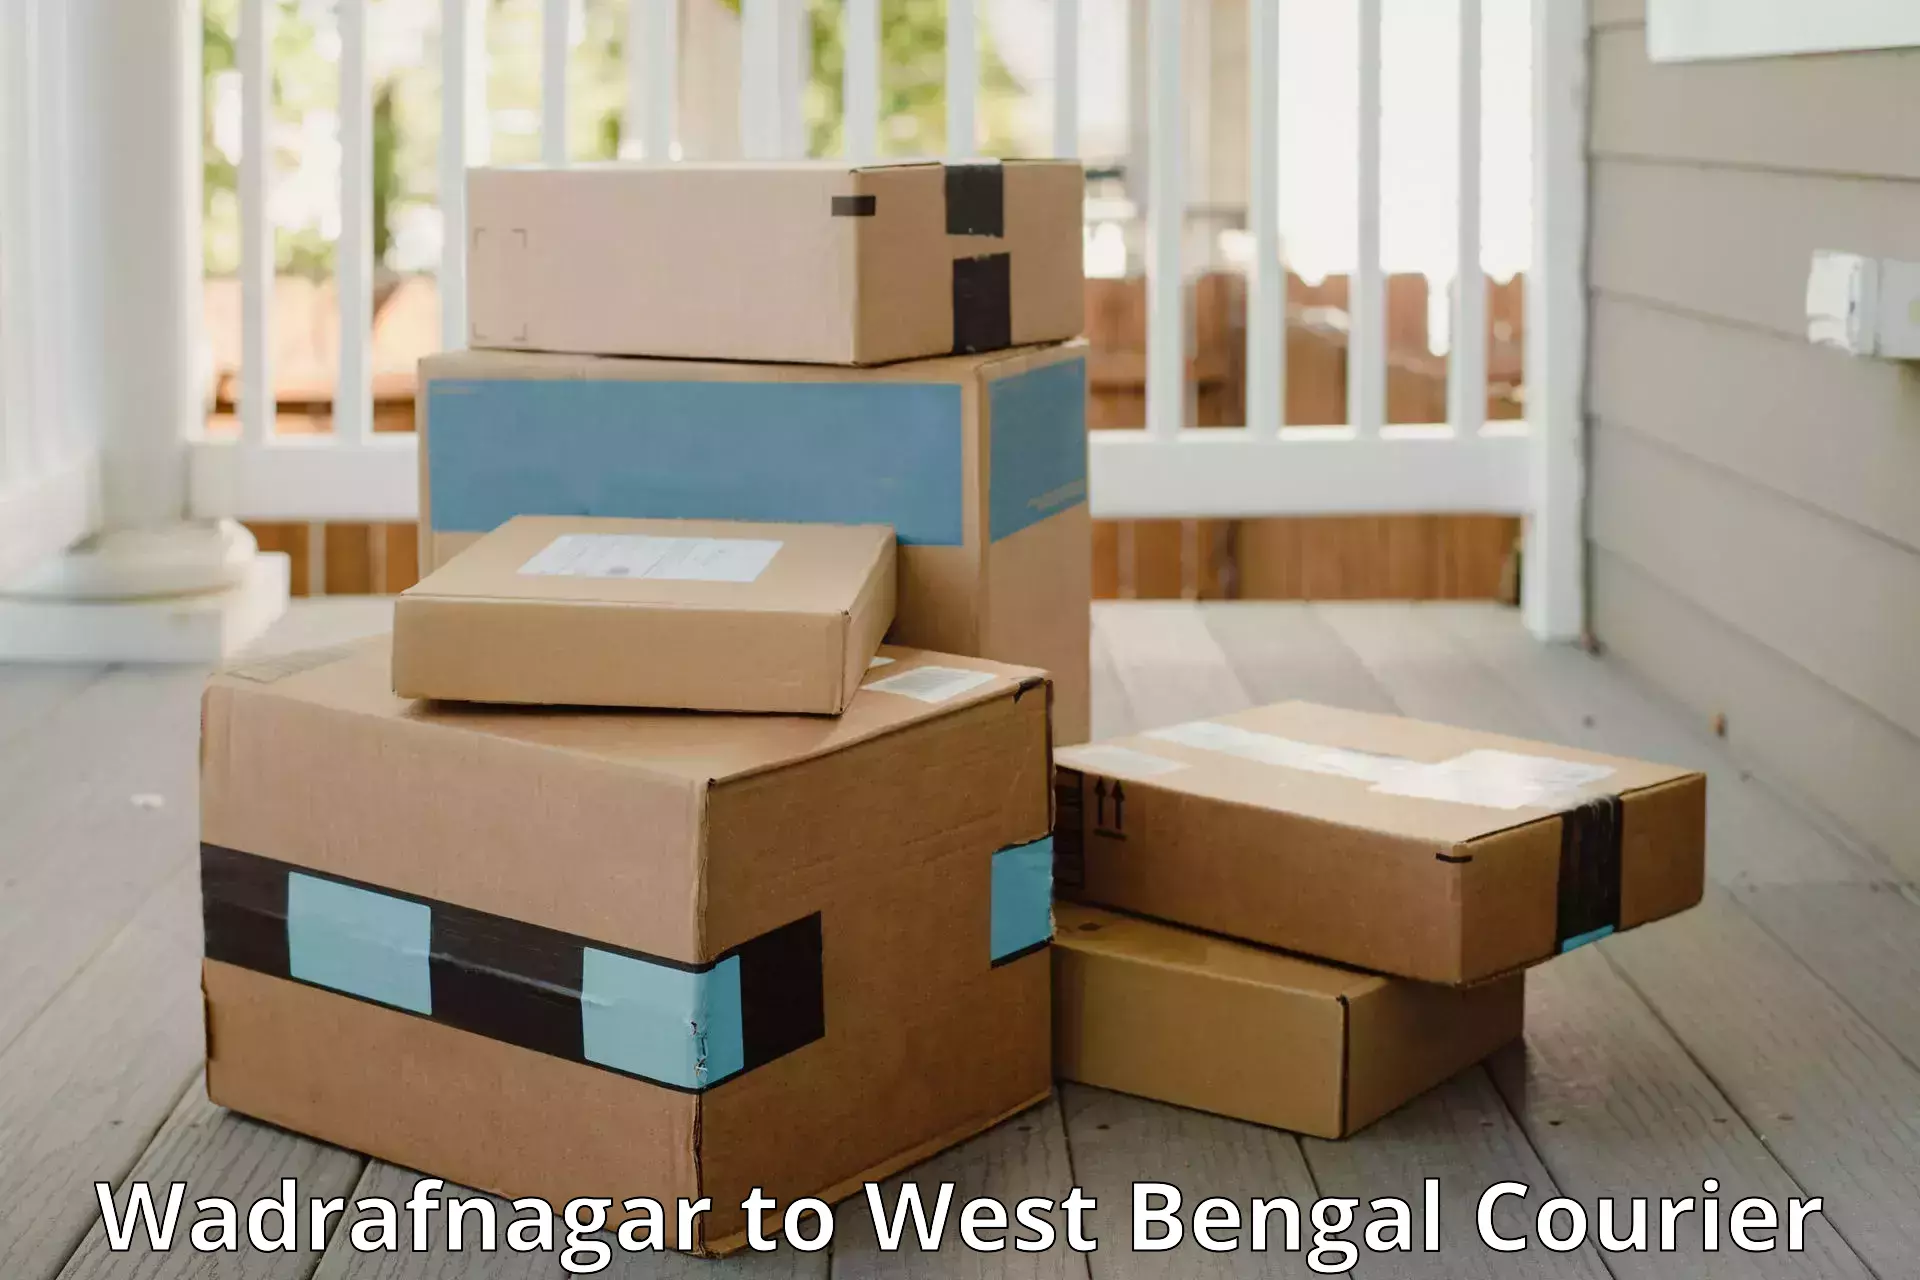 Budget-friendly baggage courier Wadrafnagar to Jamuria